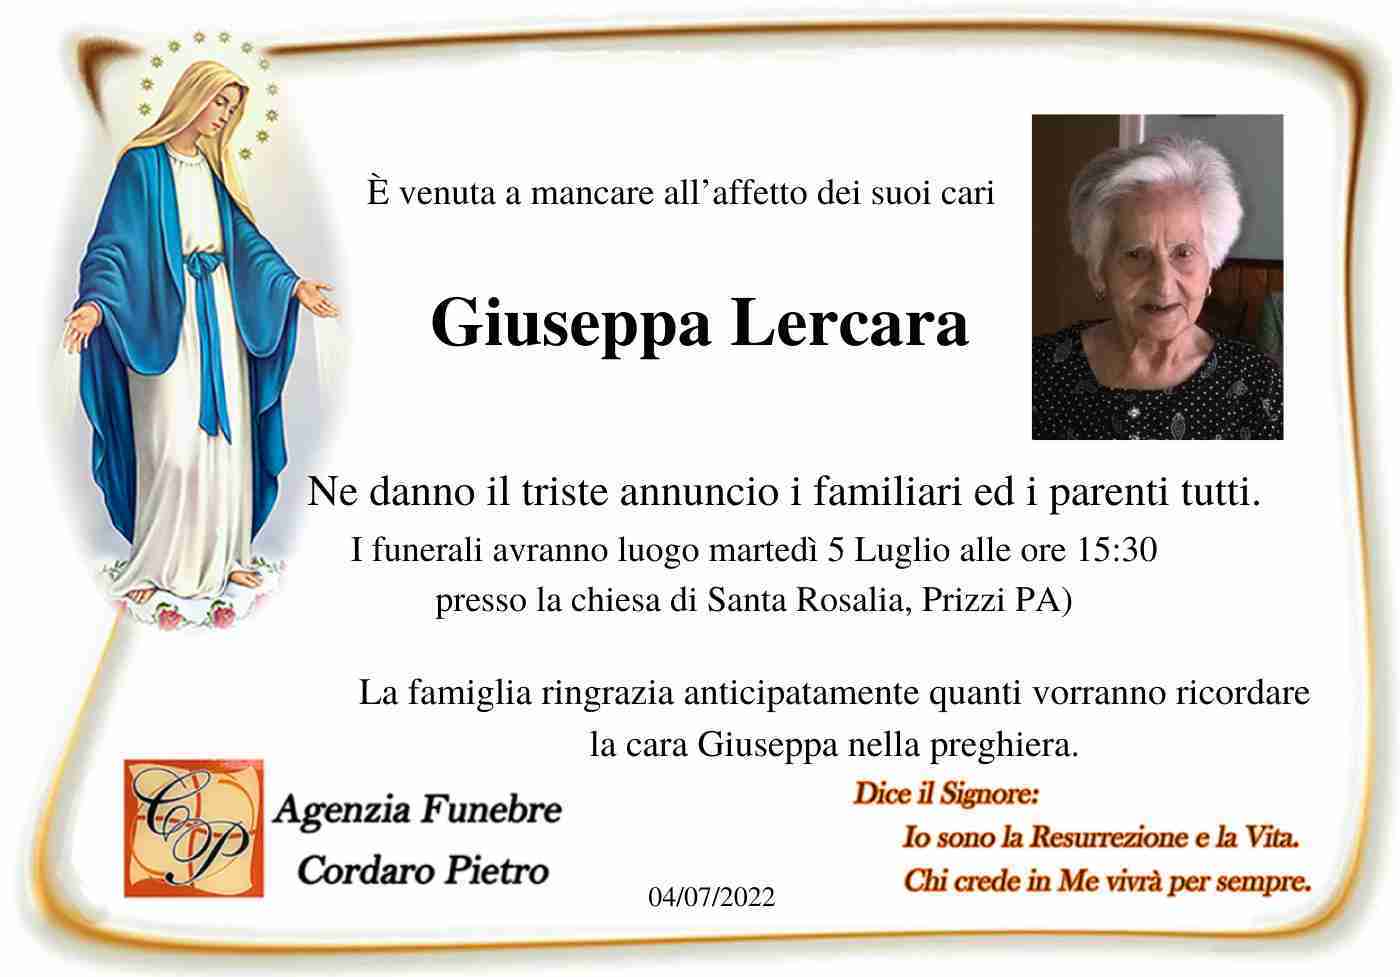 Giuseppa Lercara